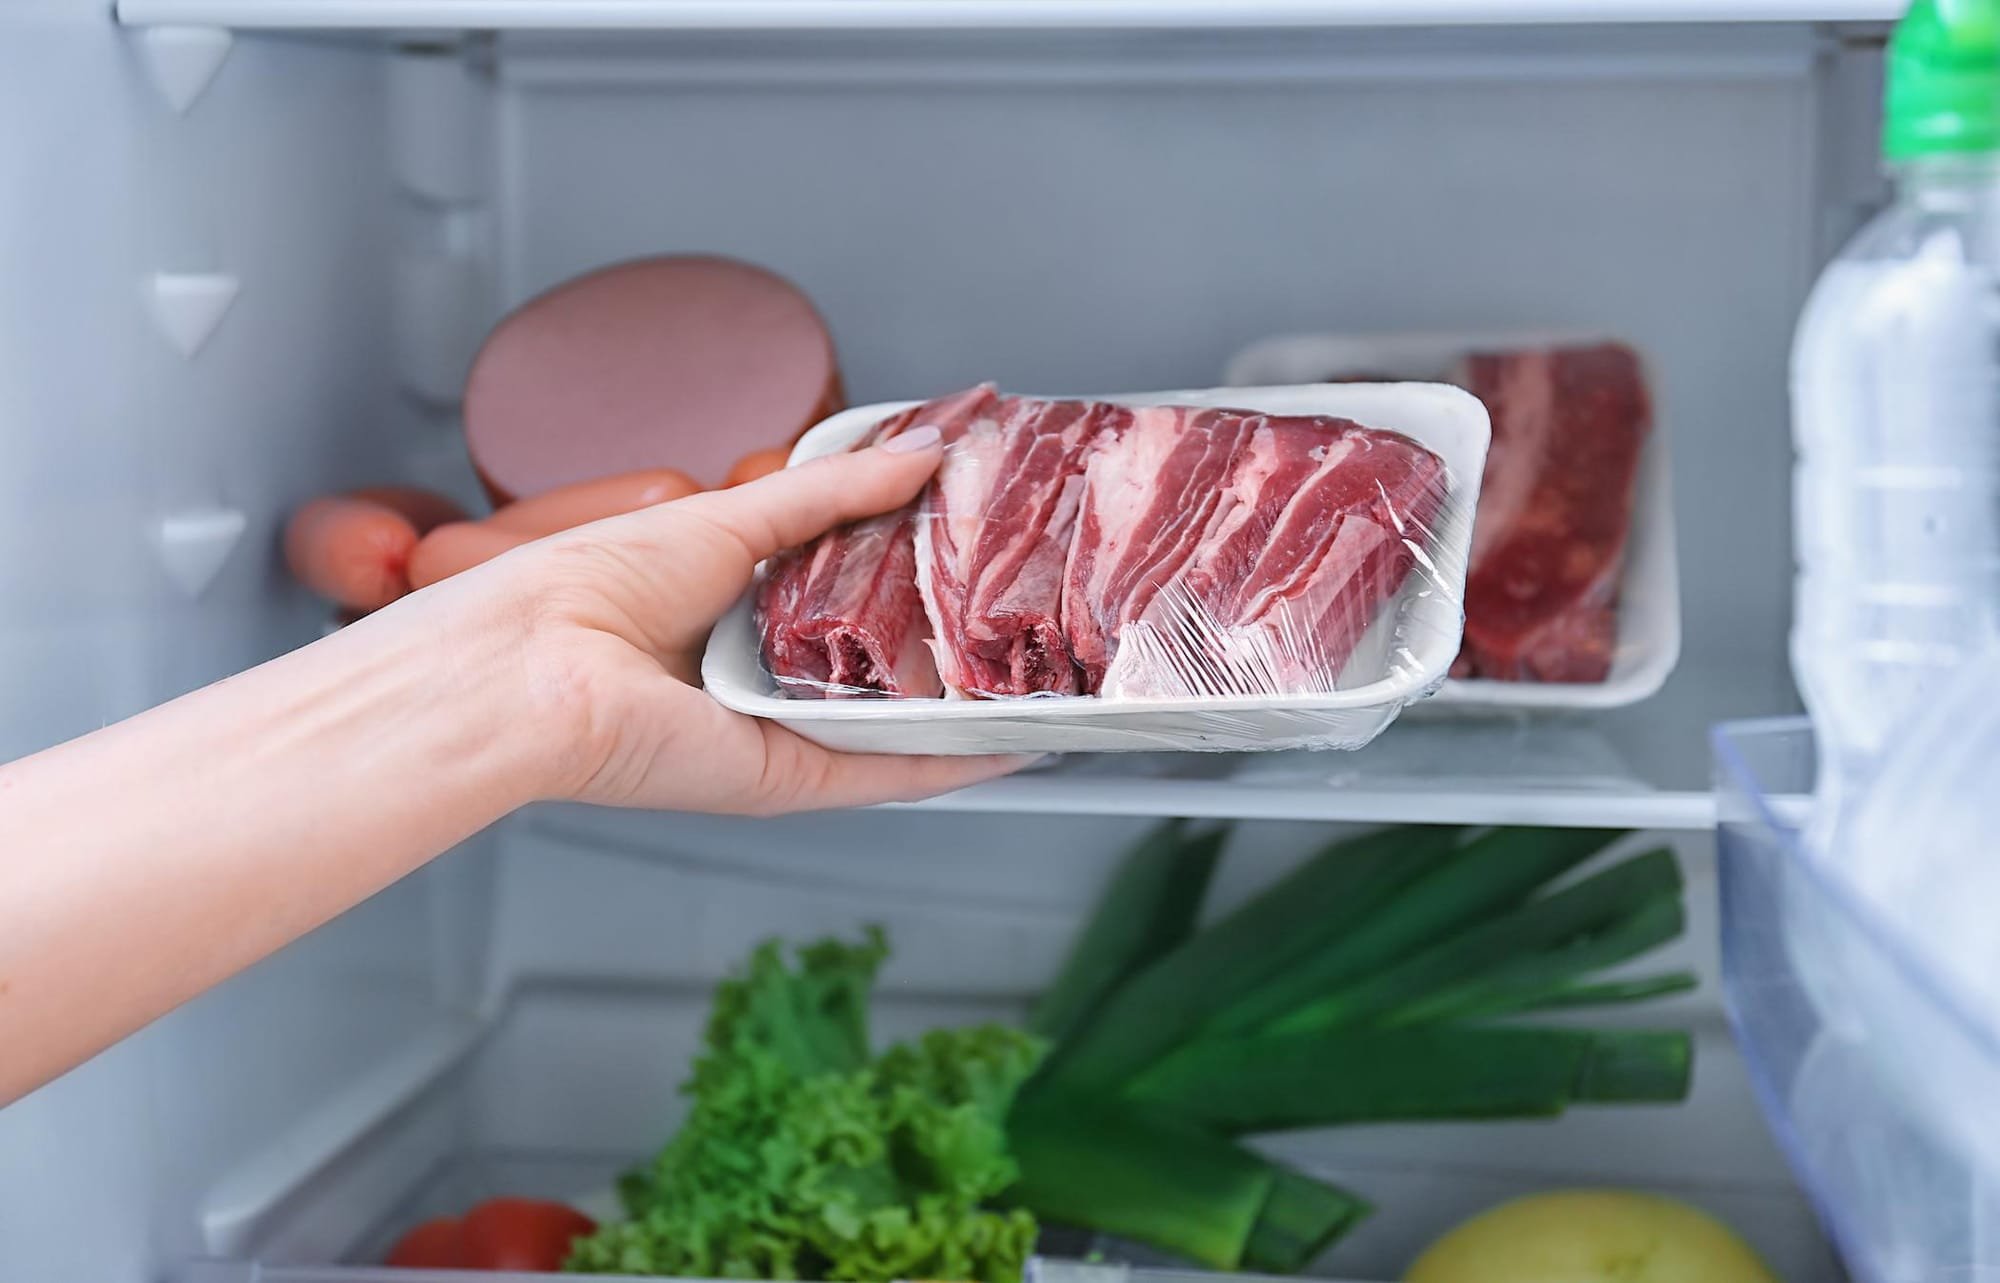 لتجنب التسمم.. أقصى مدة لتخزين اللحوم في الثلاجة والفريزر